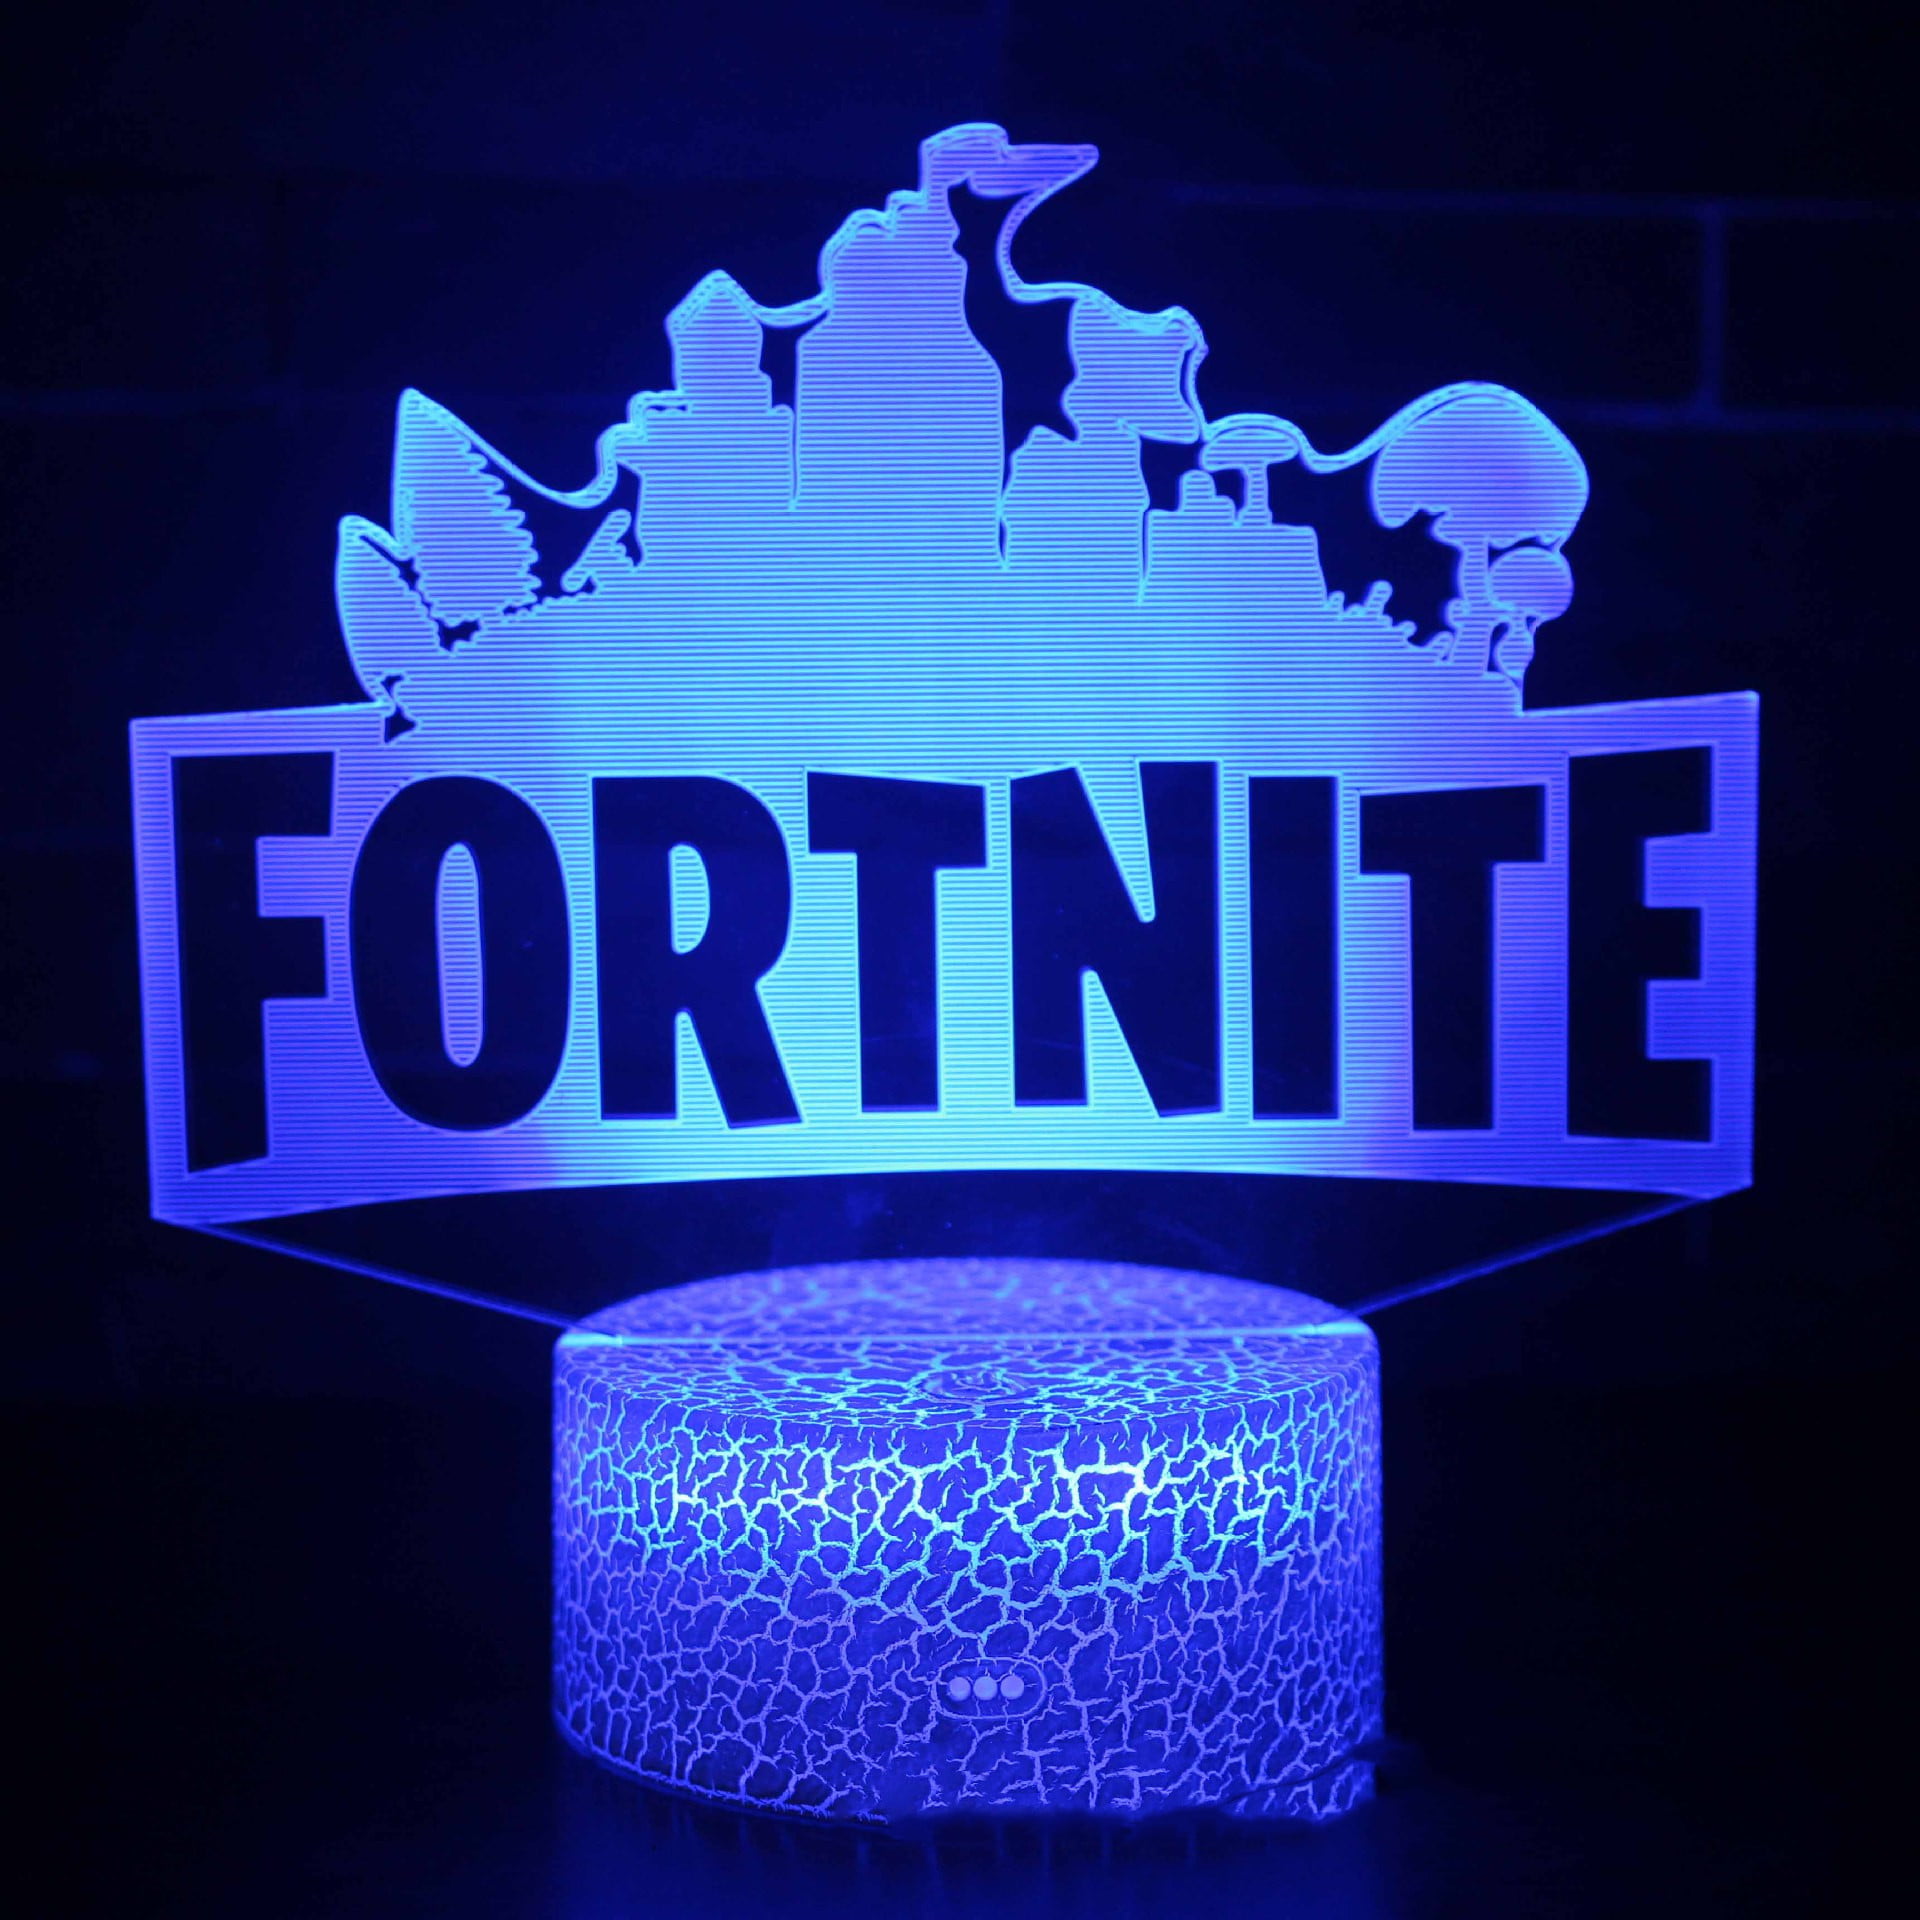 Fortnite LED Night light Lamp Digital Alarm Clock Christmas Boy Girl Gift Toy 